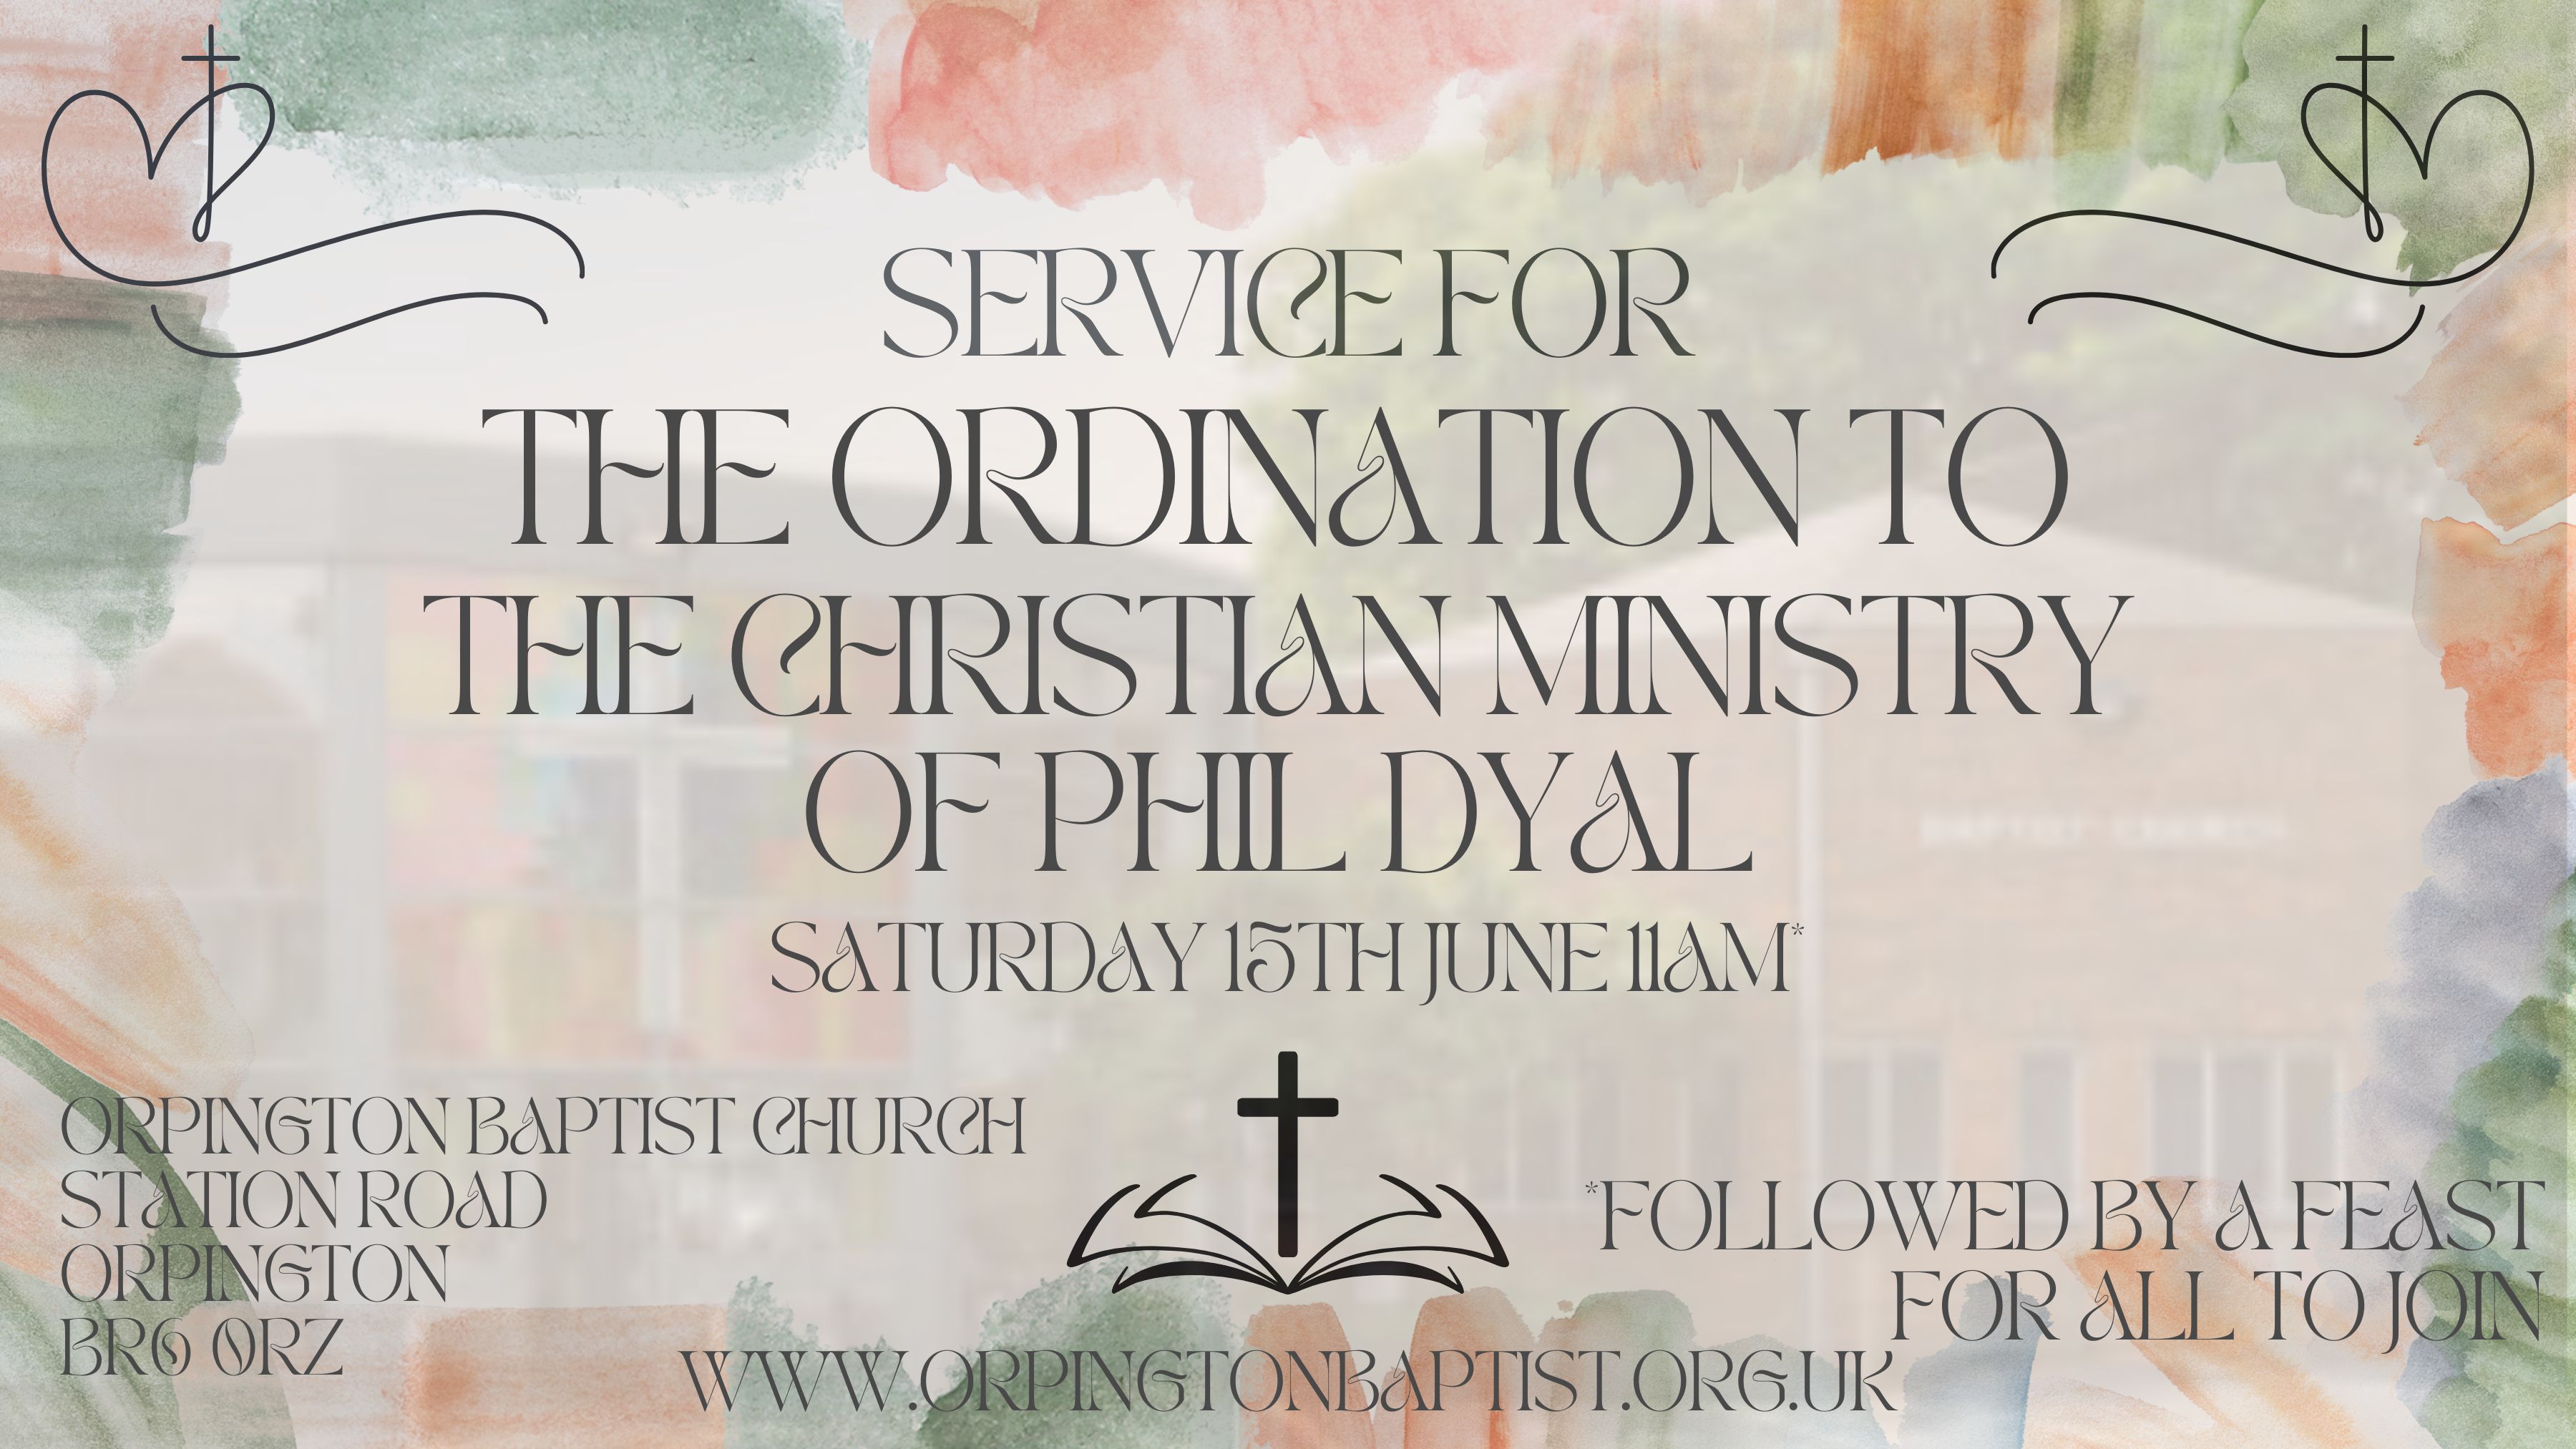 Ordination service